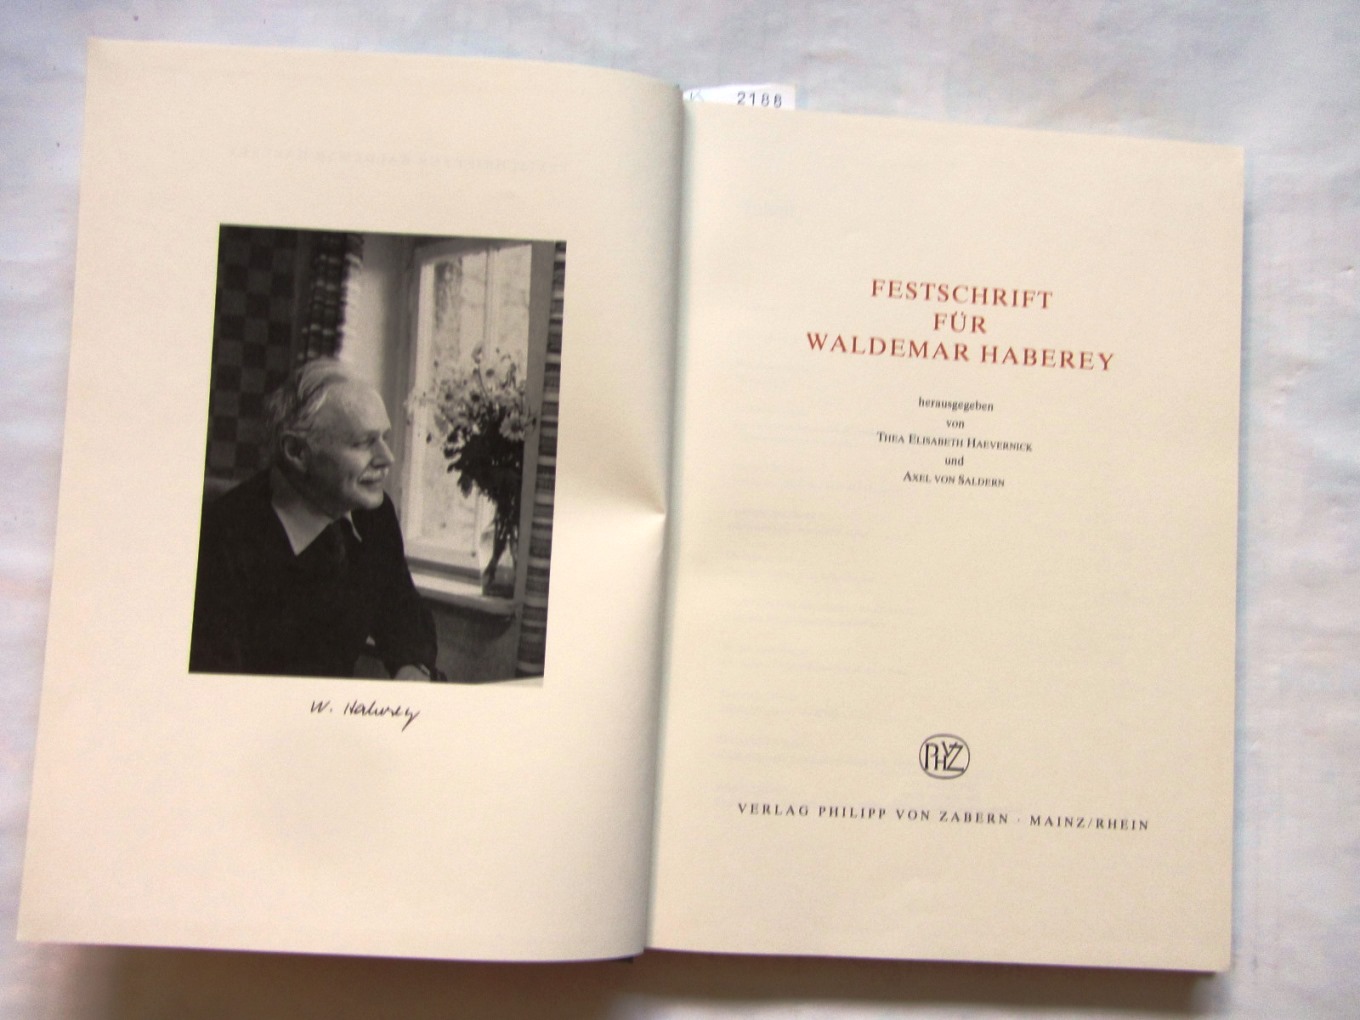 Haevernick, Thea Elisabeth und Axel von Saldern (Hrsg.):  Festschrift für Waldemar Haberley. 